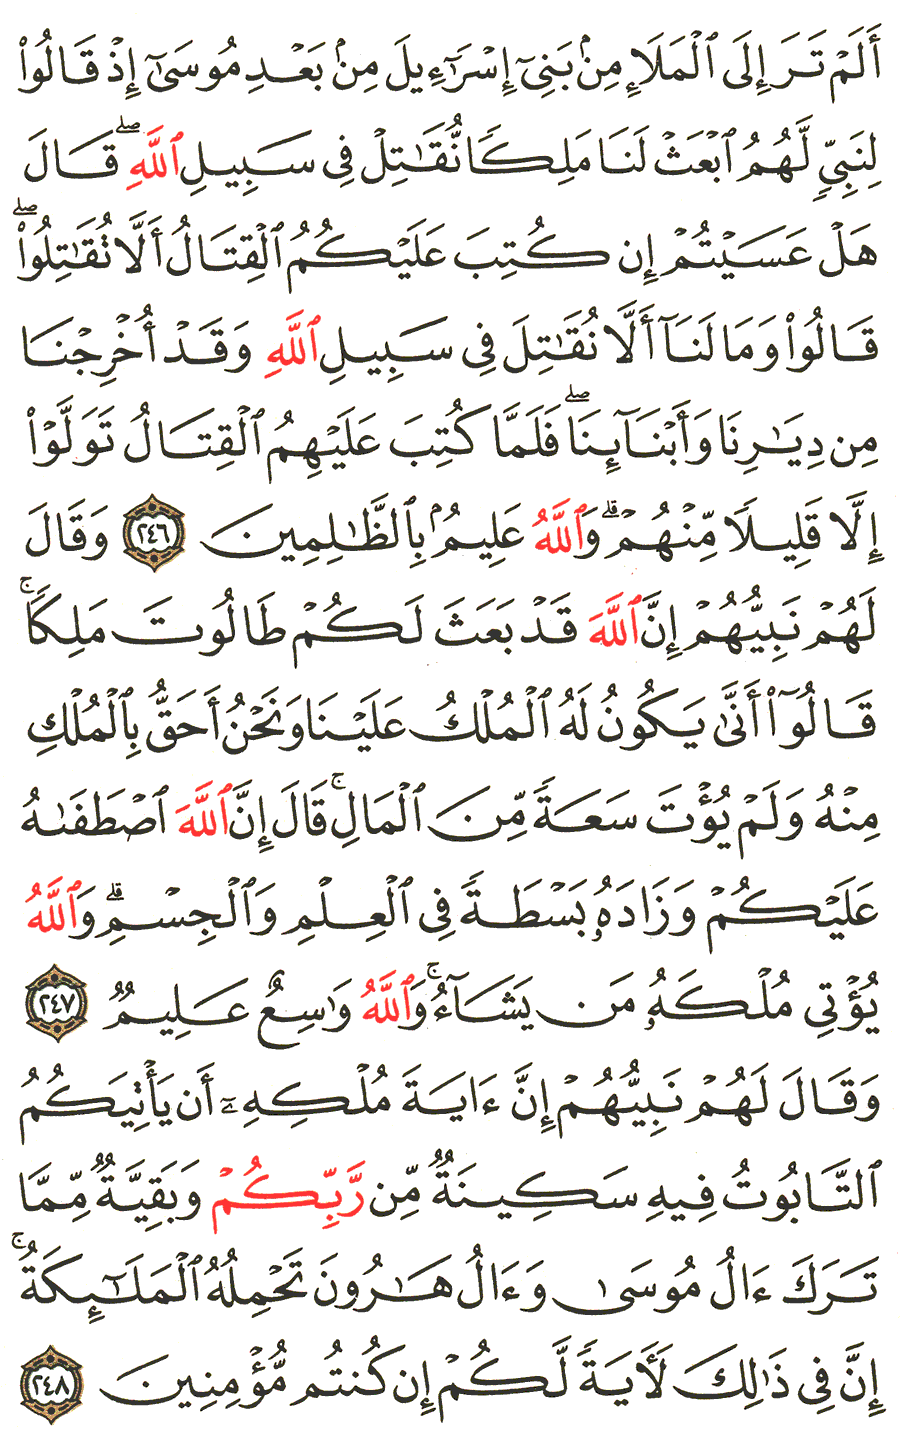 الصفحة 40 من القرآن الكريم